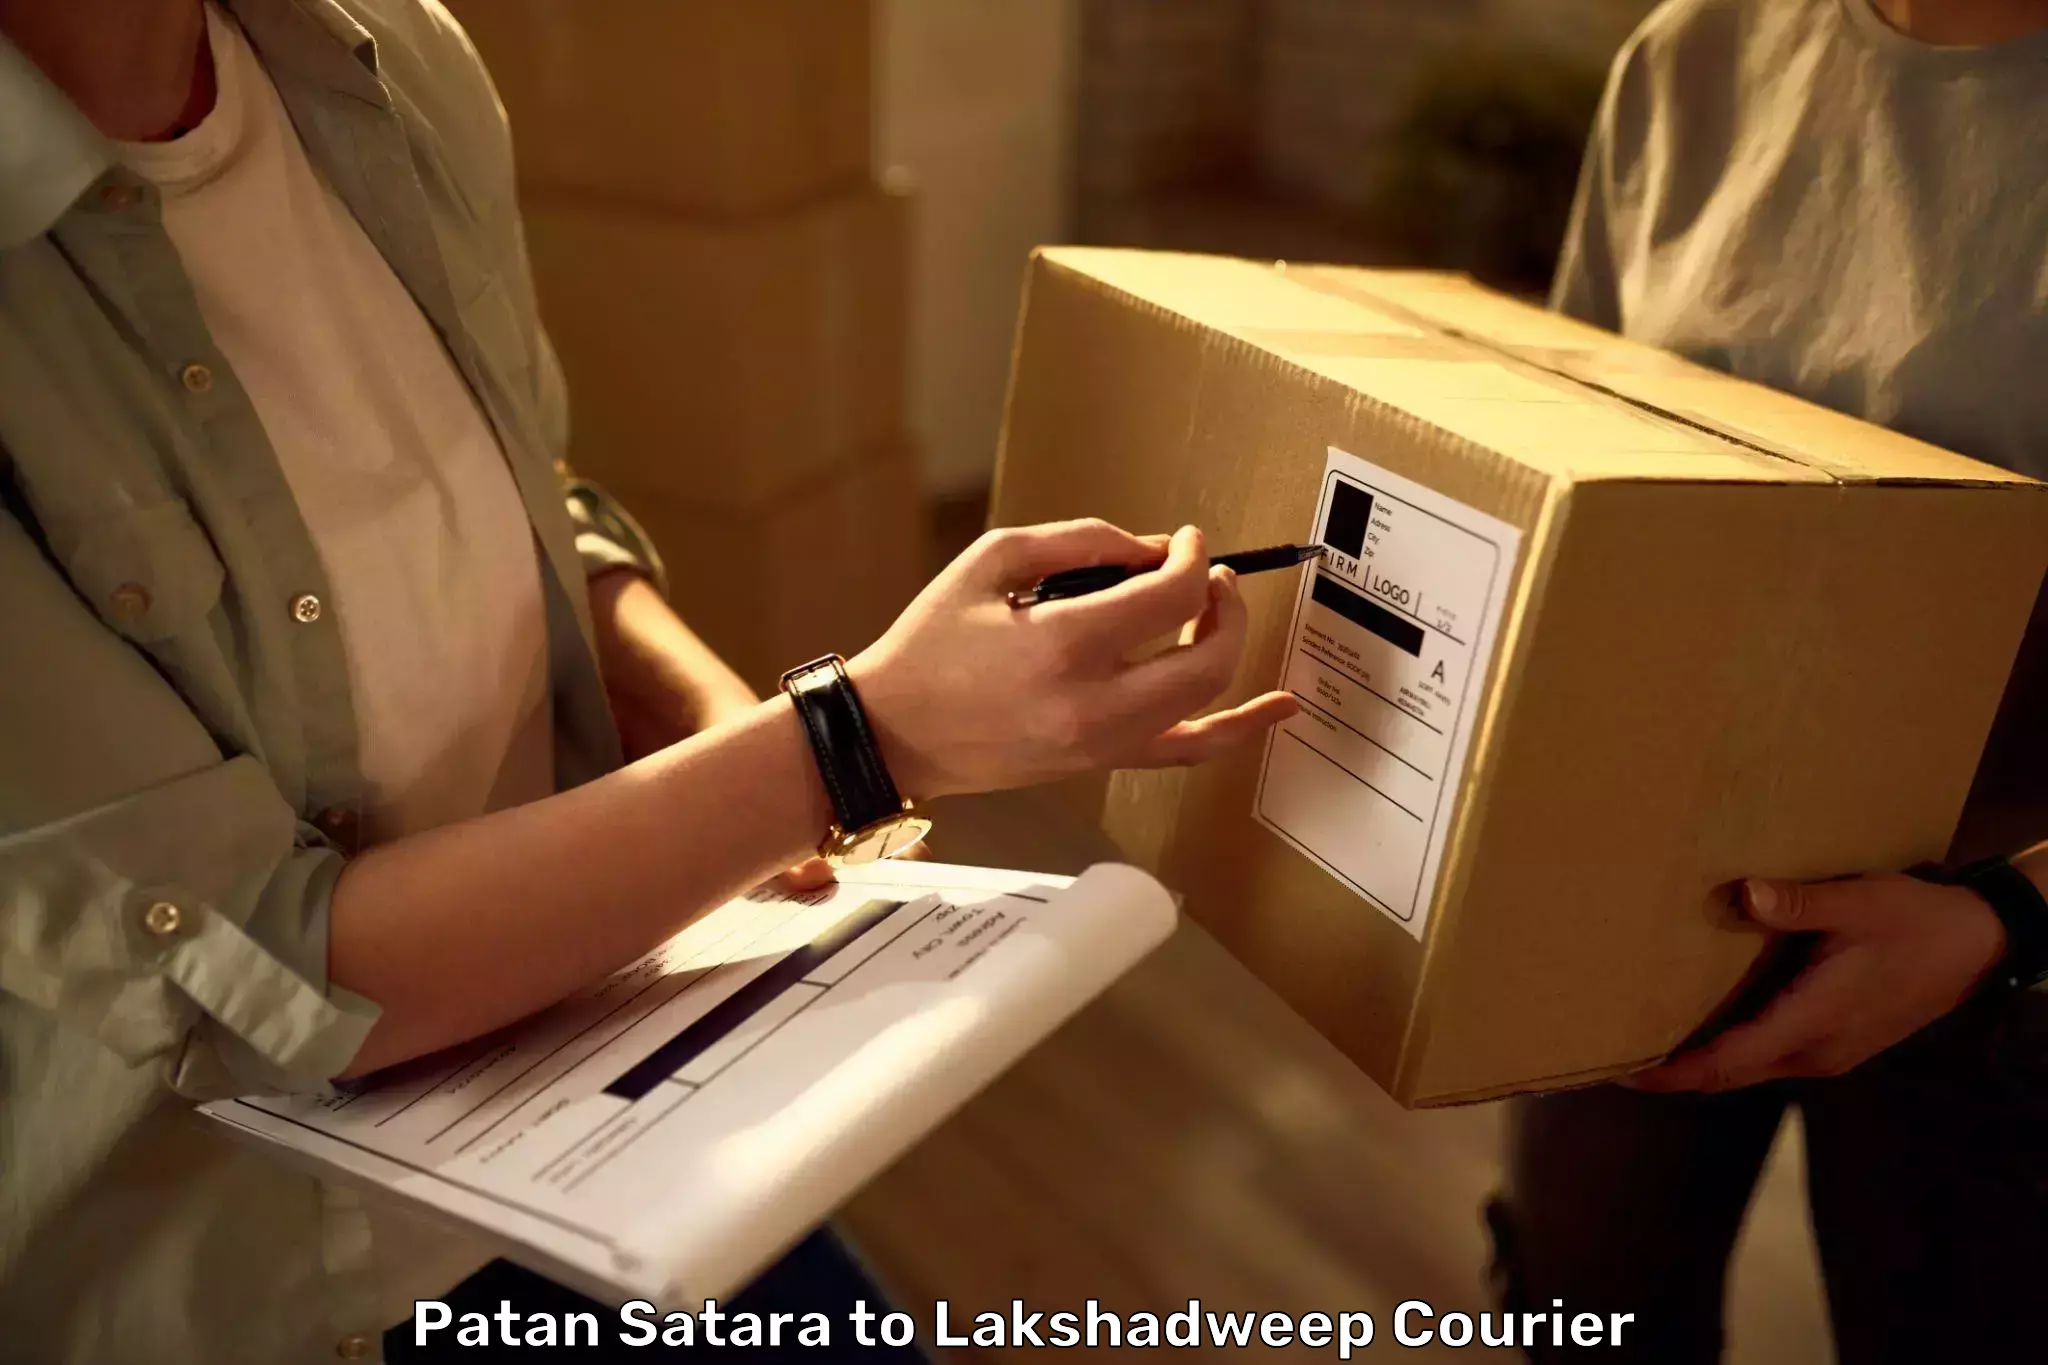 Luggage transport service Patan Satara to Lakshadweep